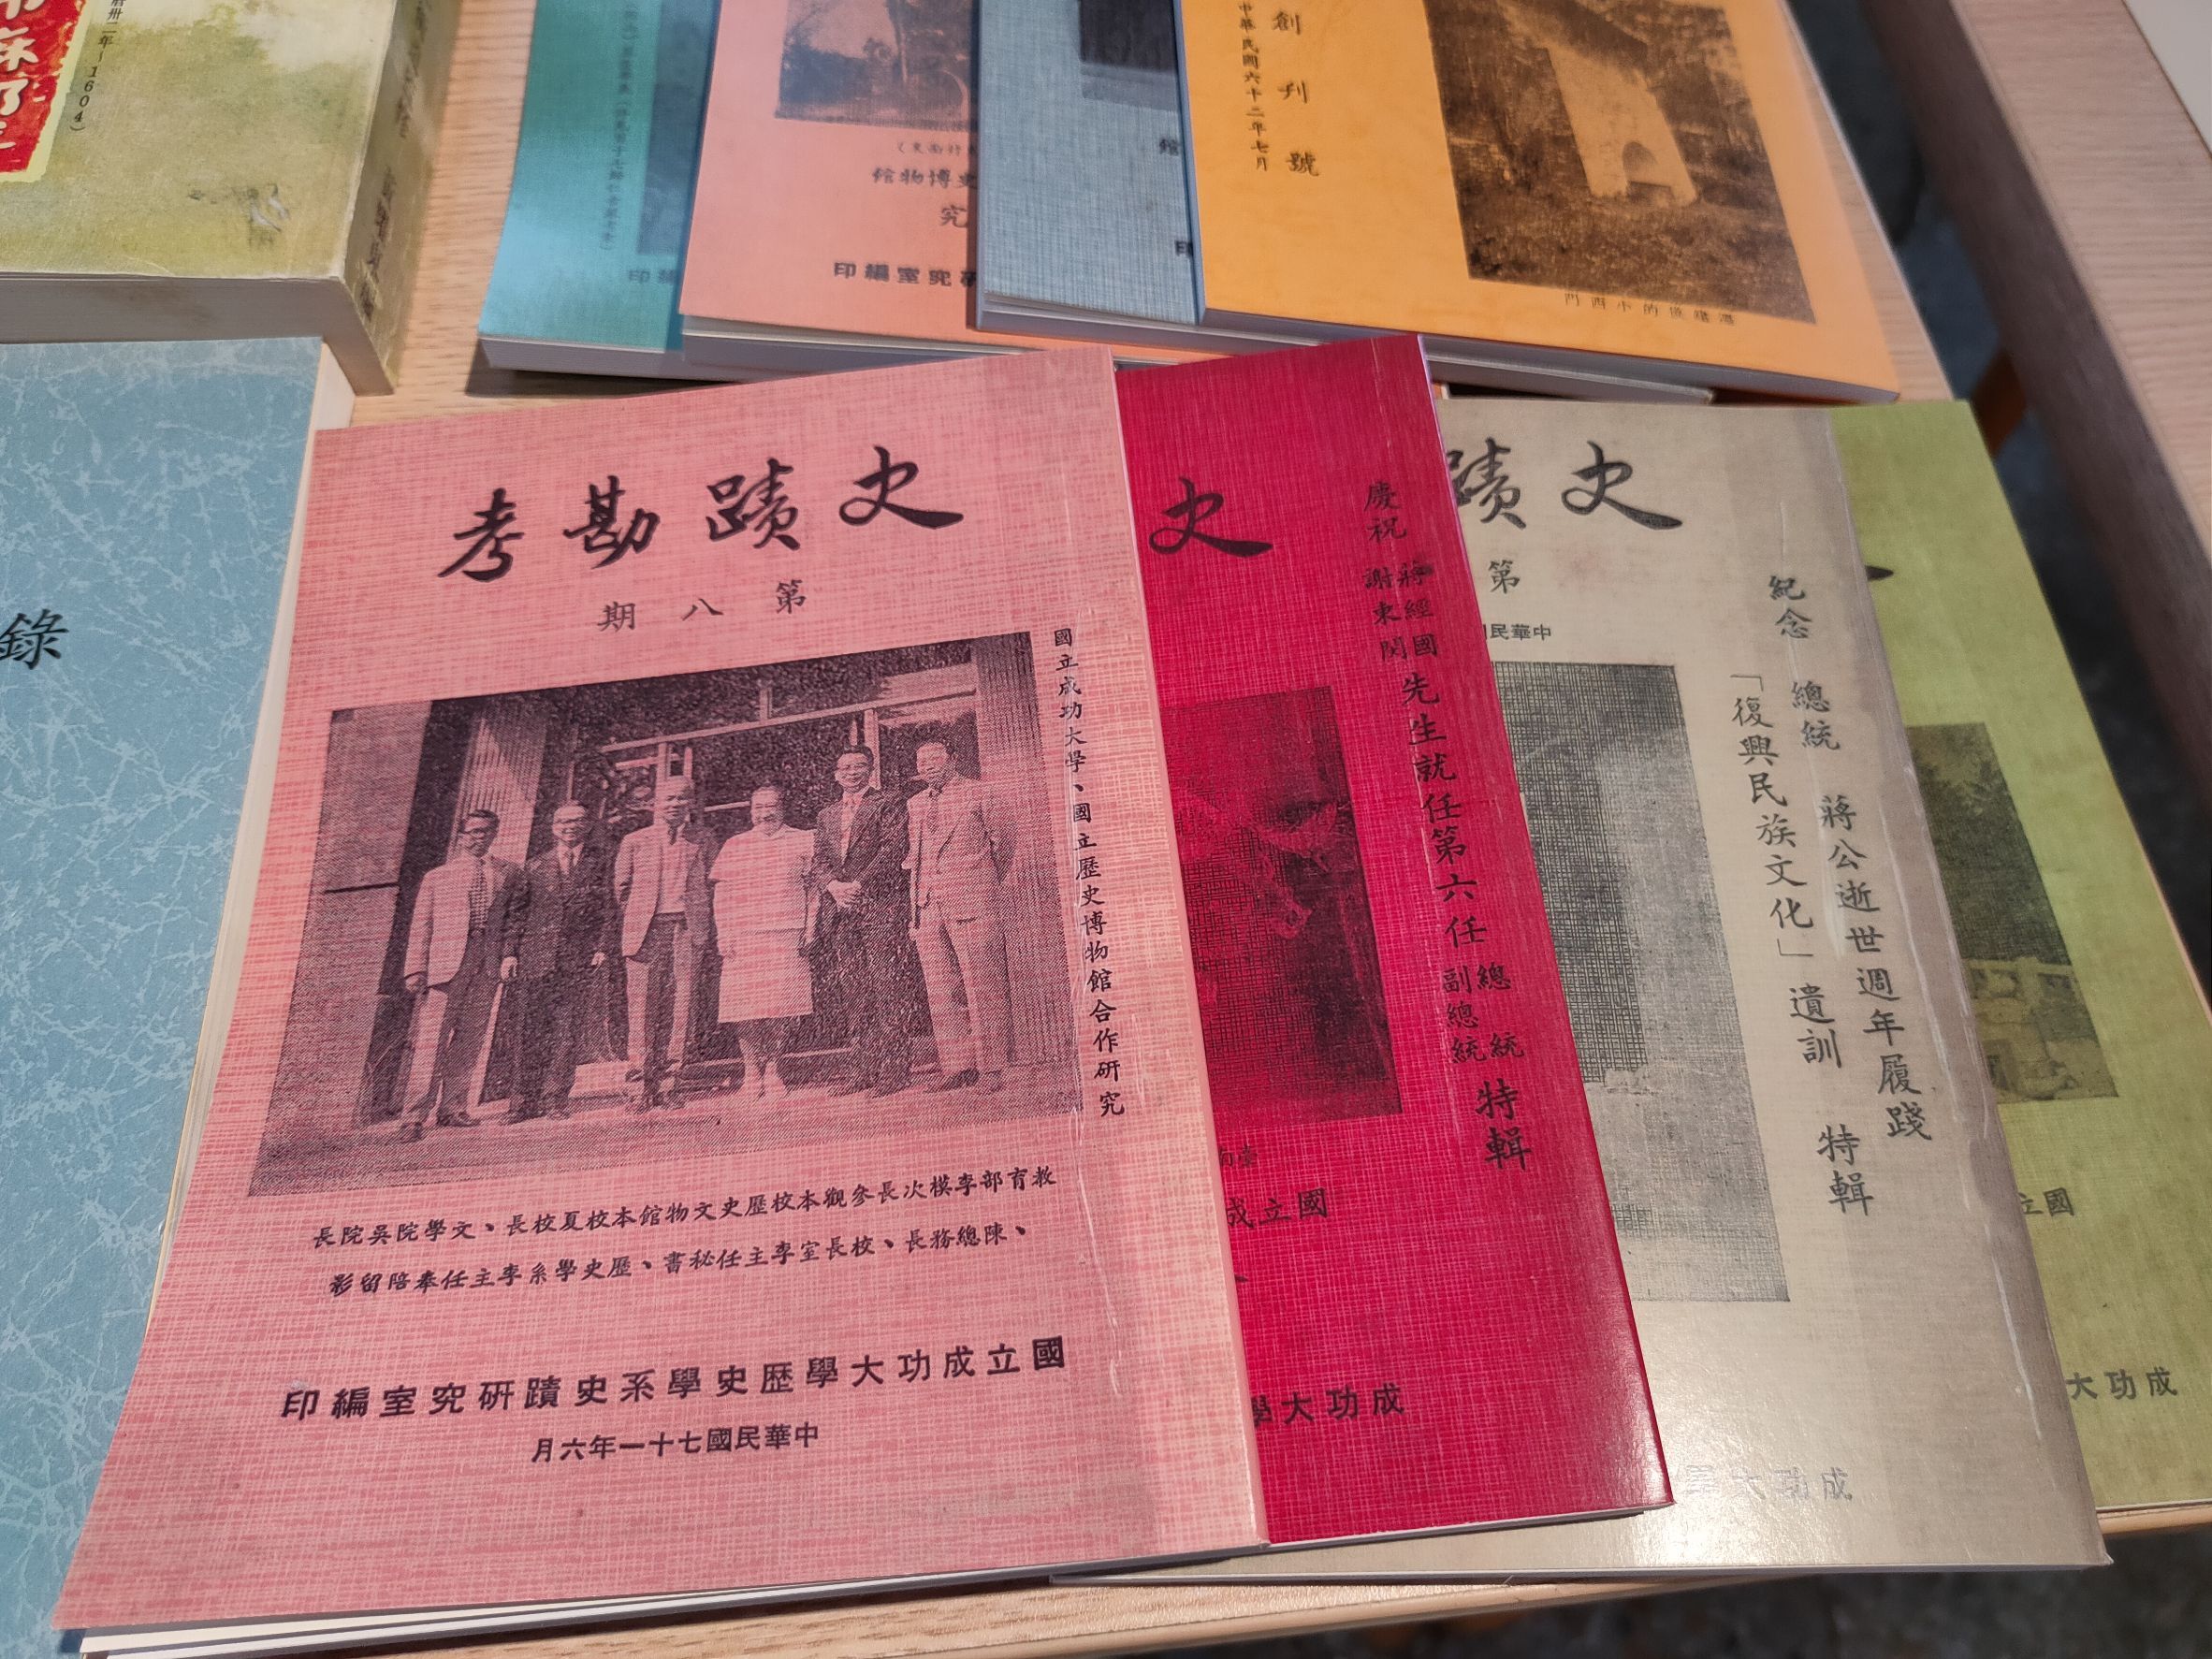 成大歷史系《史蹟勘考》創刊於1973年，是當時重要的學術期刊；2020年由陳文松老師復刊